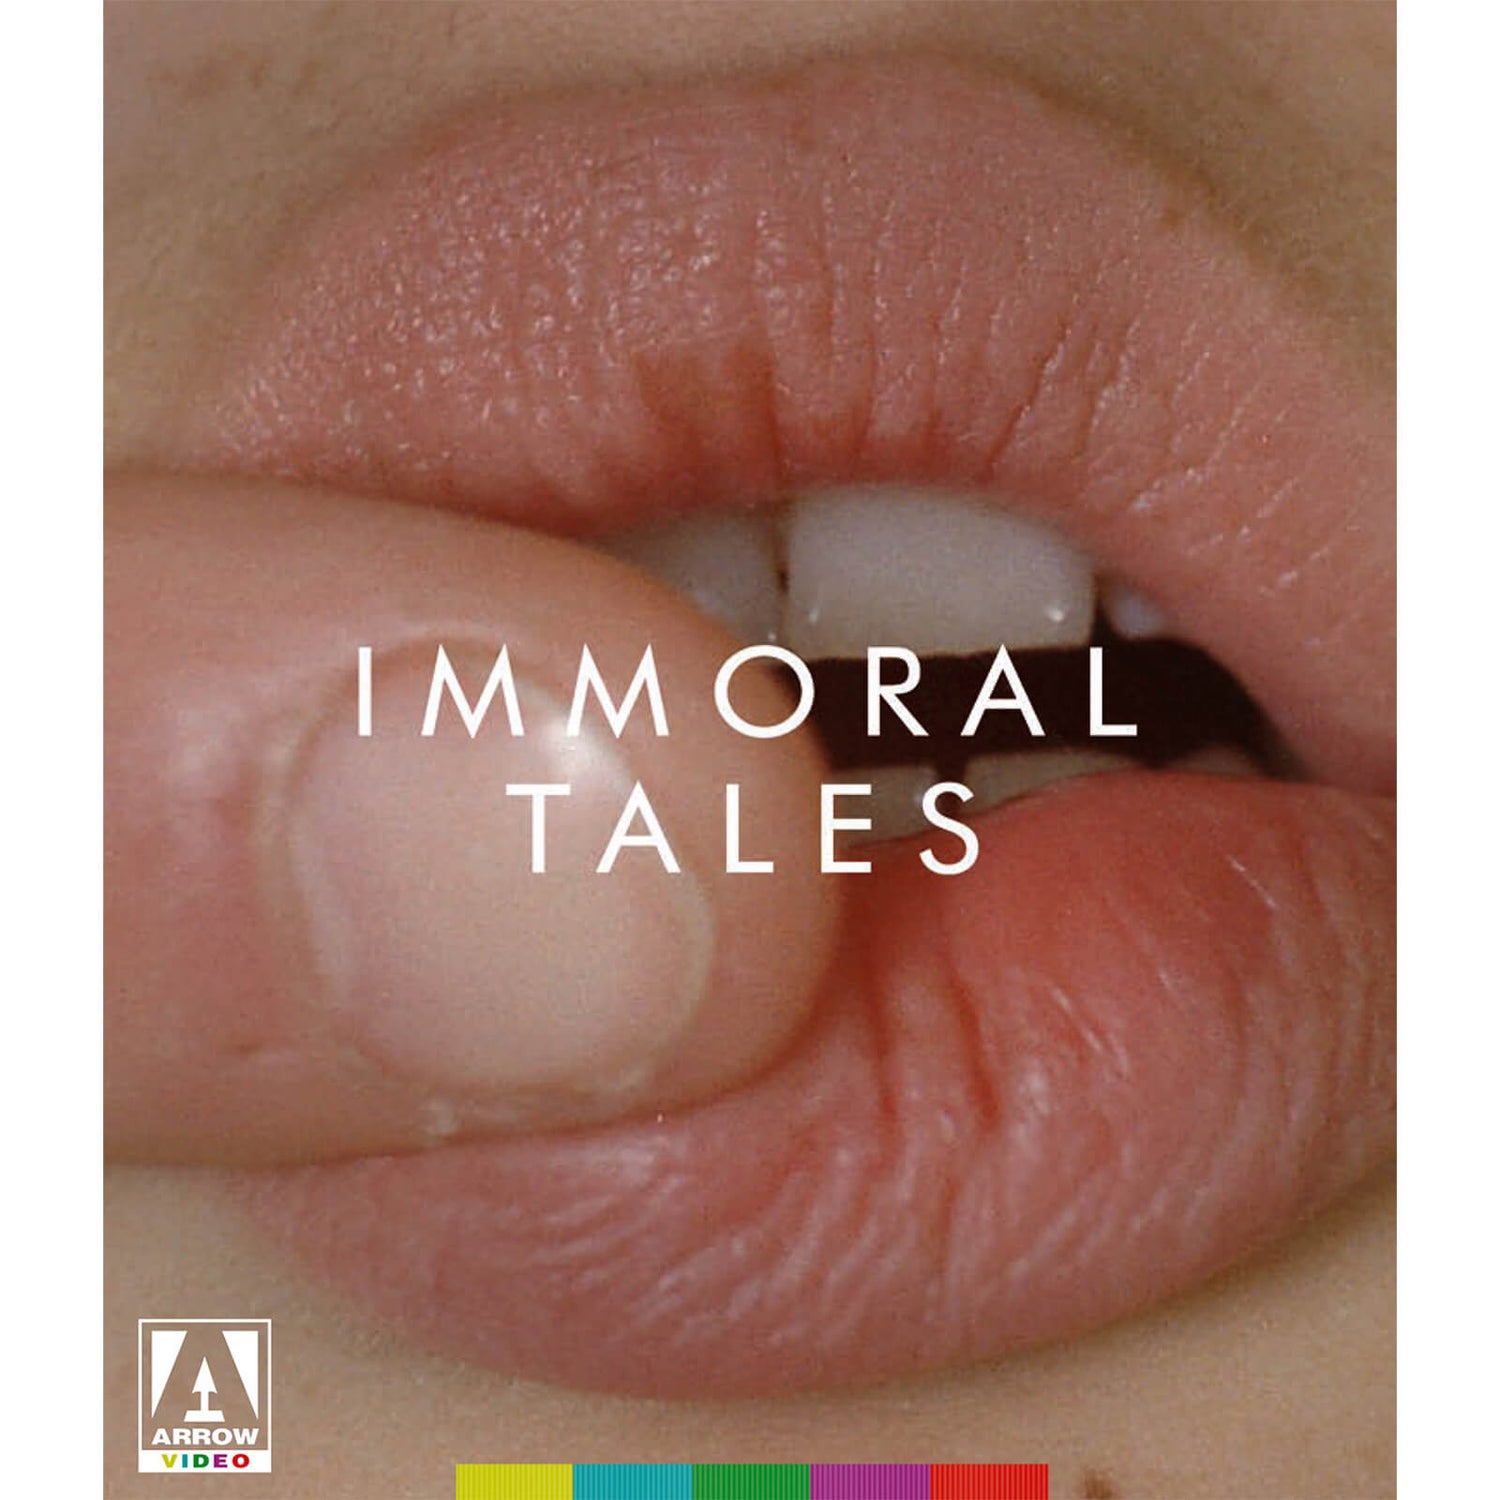 Immoral Tales Blu-ray+DVD